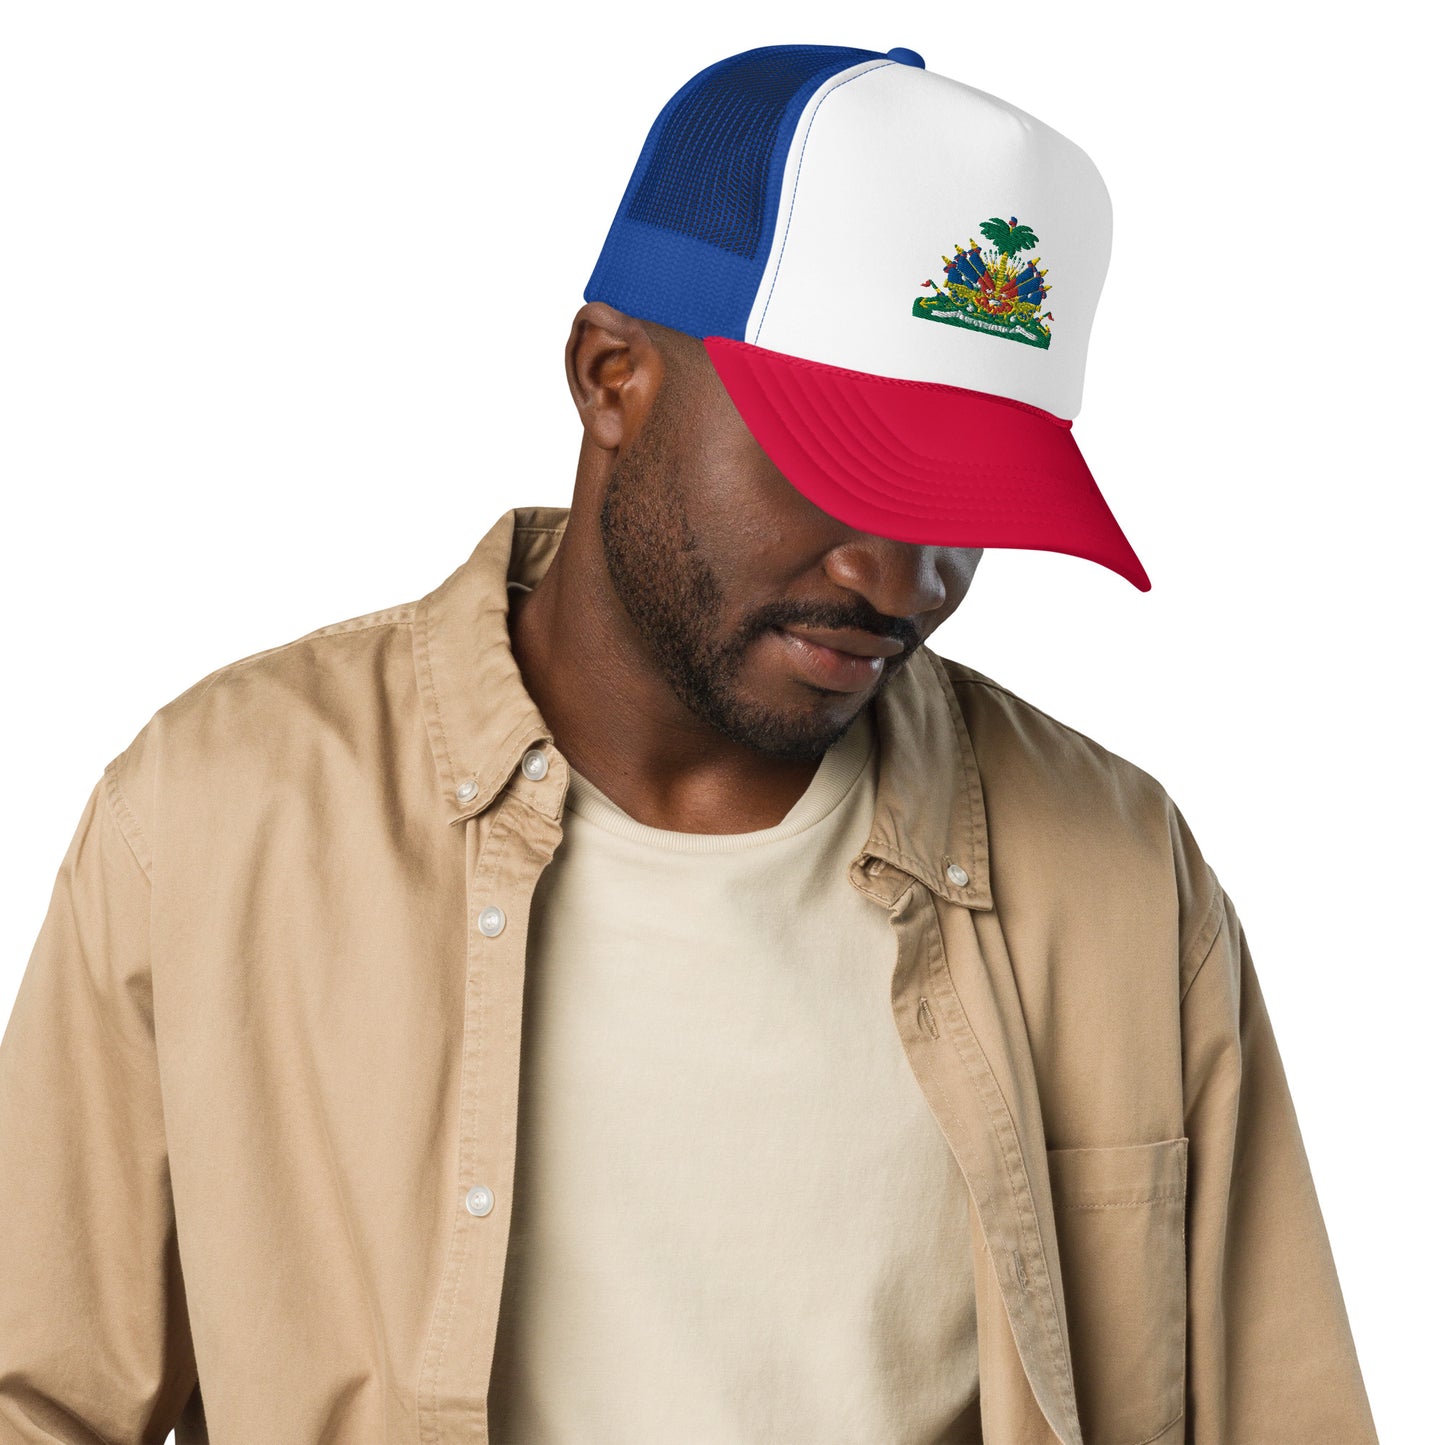 Foam trucker hat ( Haitian Emblem )